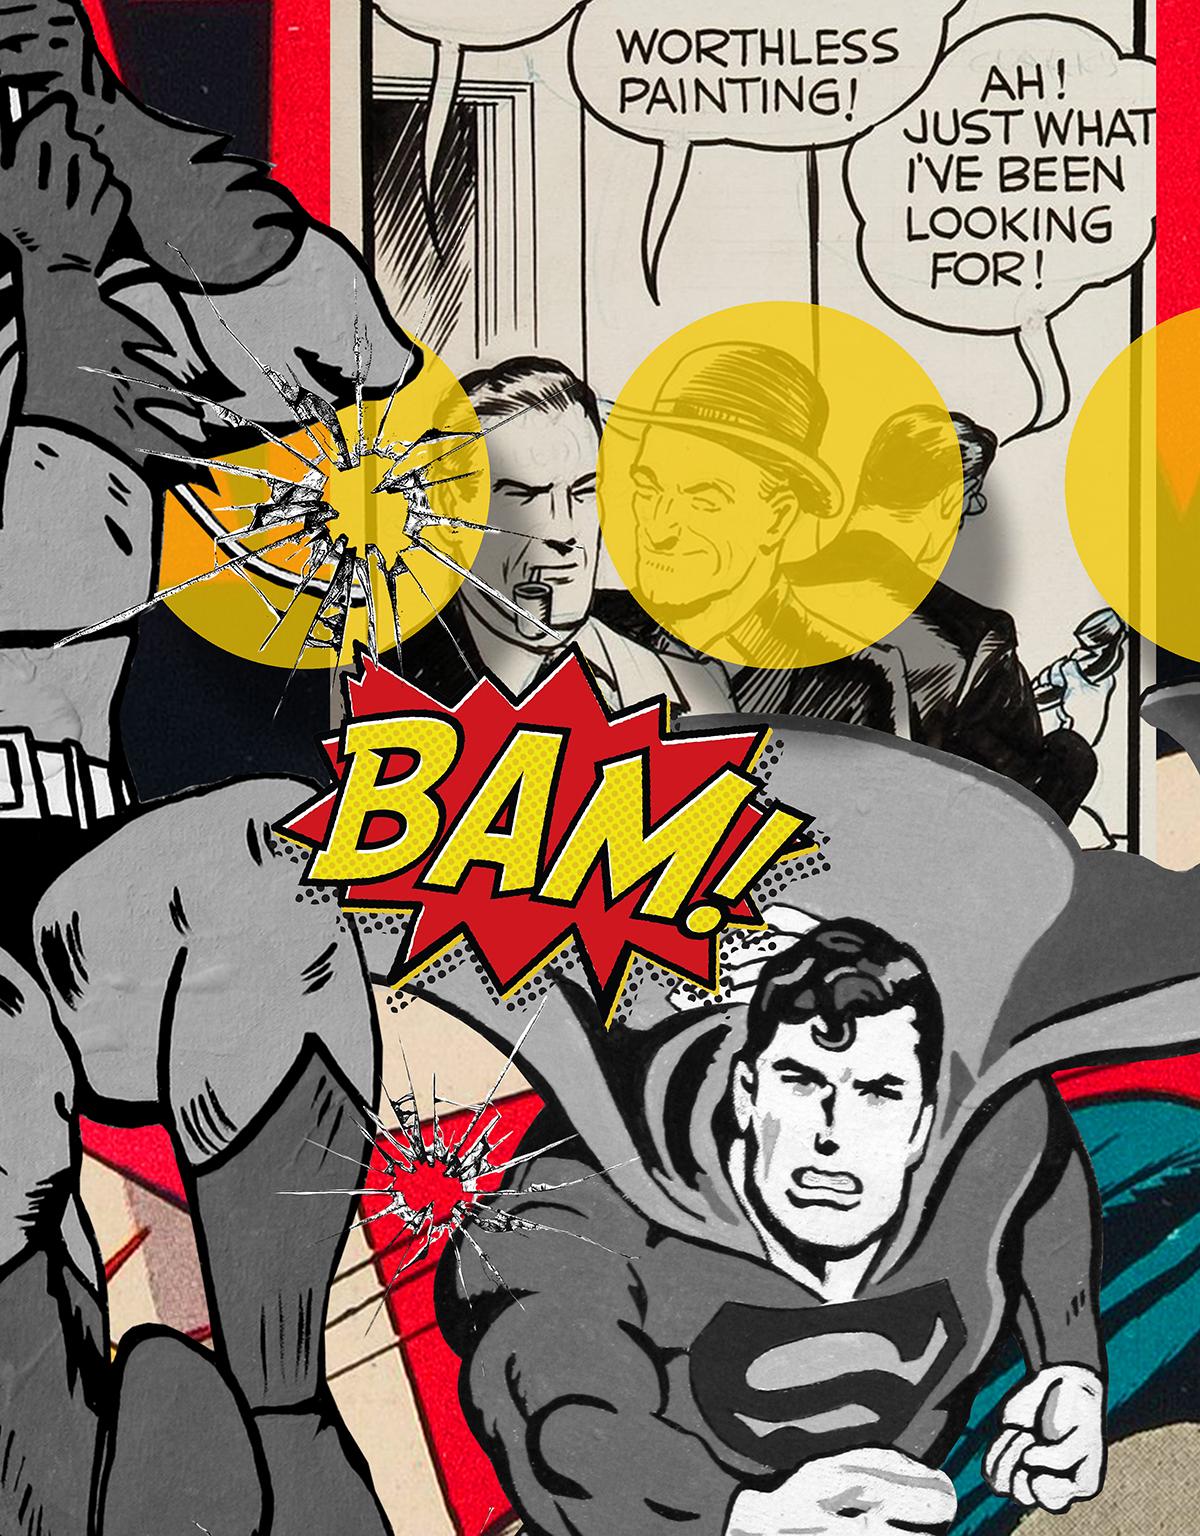 Ein wertloses Gemälde wird gestohlen und Batman und Robin rufen The Flash und Superman zu Hilfe, um den Dieb zu fangen, während 